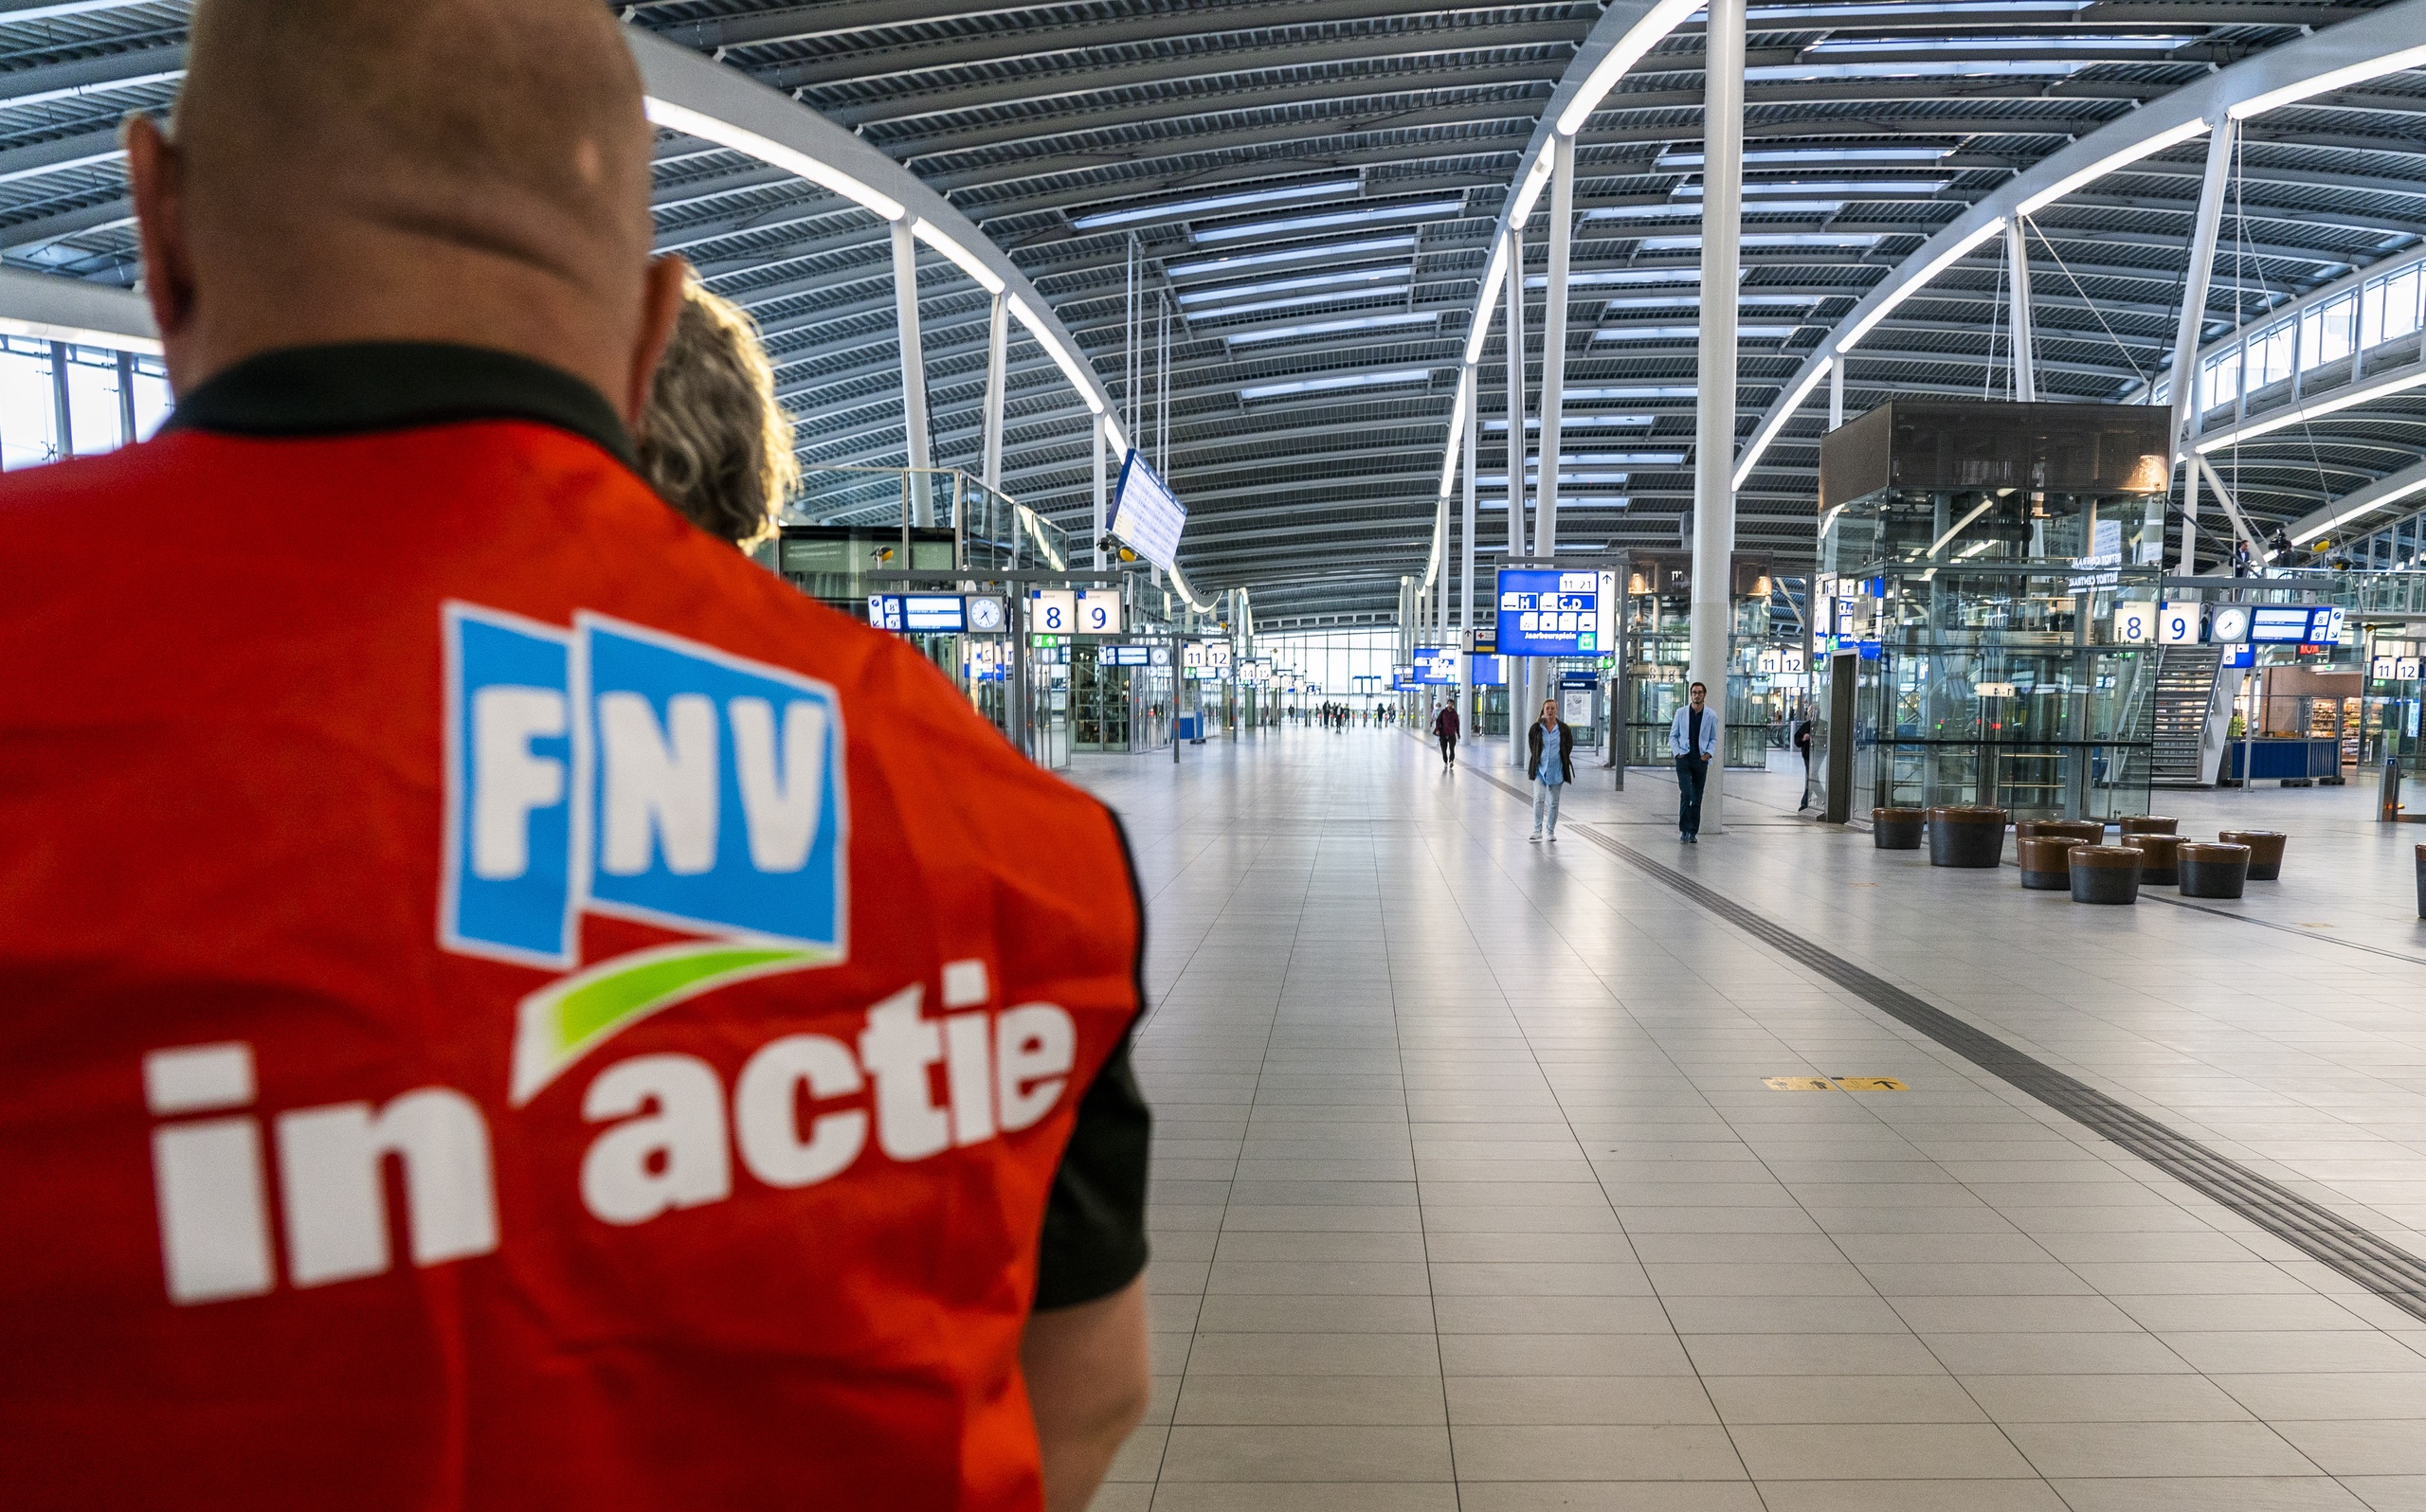 UTRECHT - Stakende NS-medewerkers op Utrecht Centraal in verband met NS-stakingen in regio midden-Nederland. Personeel van de Nederlandse Spoorwegen leggen in een estafettestakingen van 24 uur plaatselijk het werk neer. 